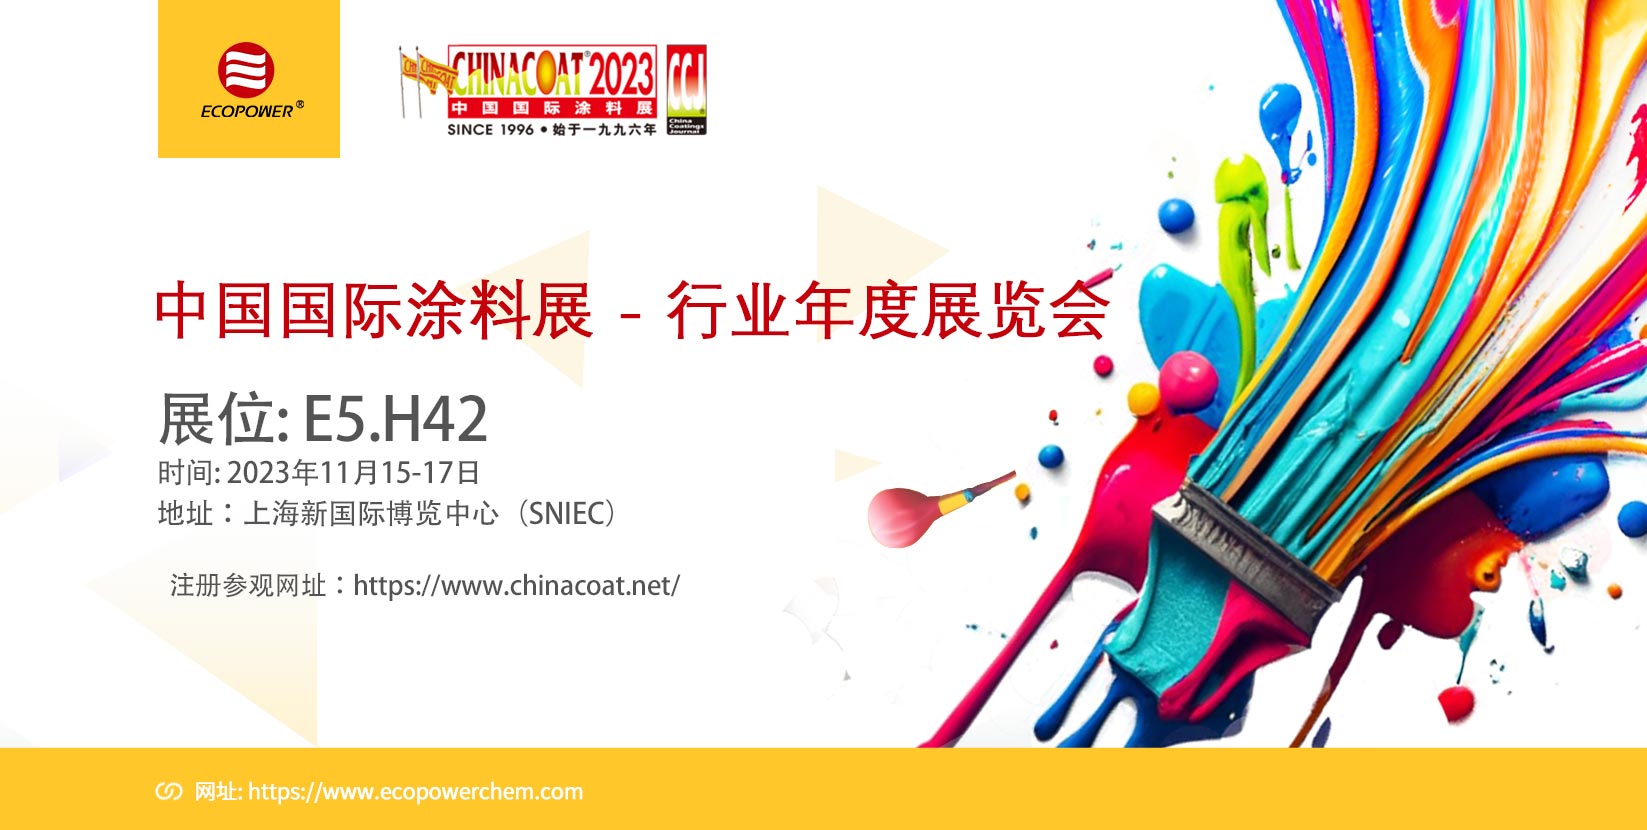 11月15-17日上海新国际博览中心2023年中国国际涂料展